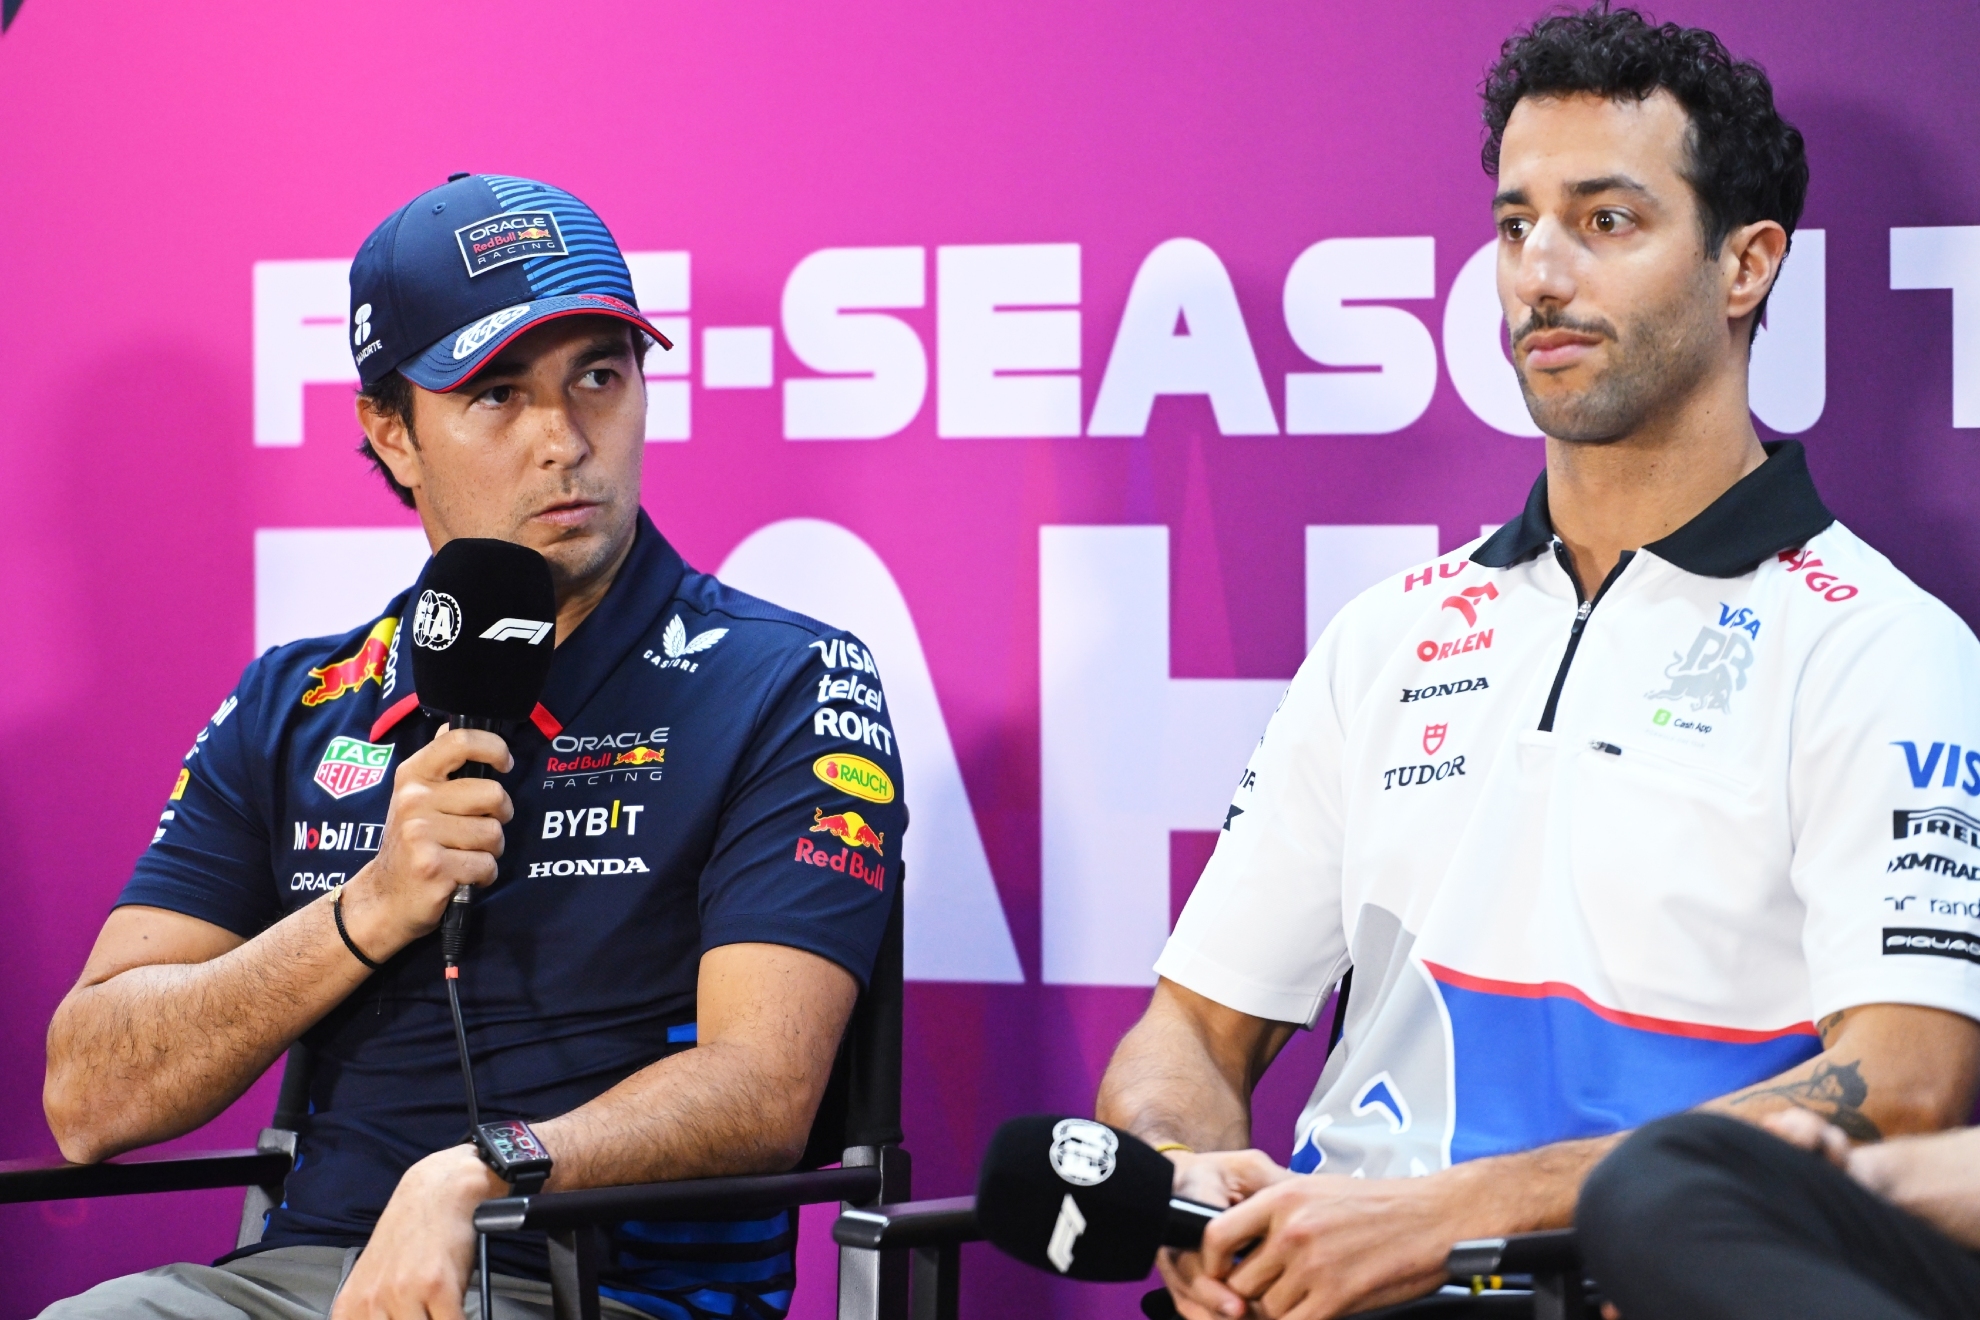 Checo Prez habla en rueda de prensa, con Ricciardo a su lado.